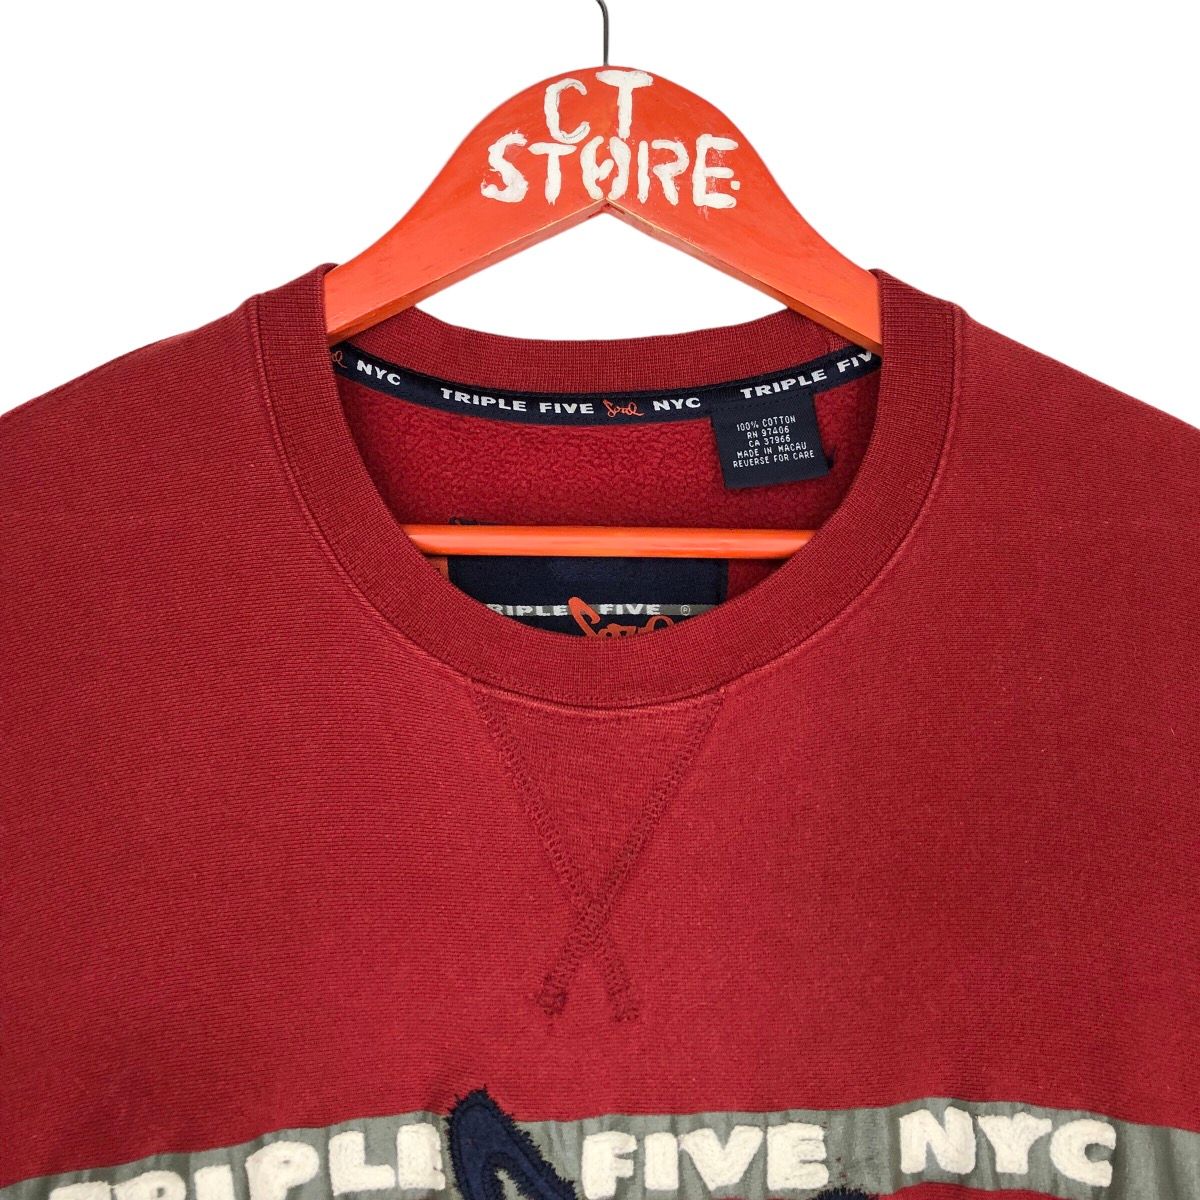 Vintage Triple Five Soul NYC Crewneck Sweatshirts Size US XL / EU 56 / 4 - 3 Thumbnail